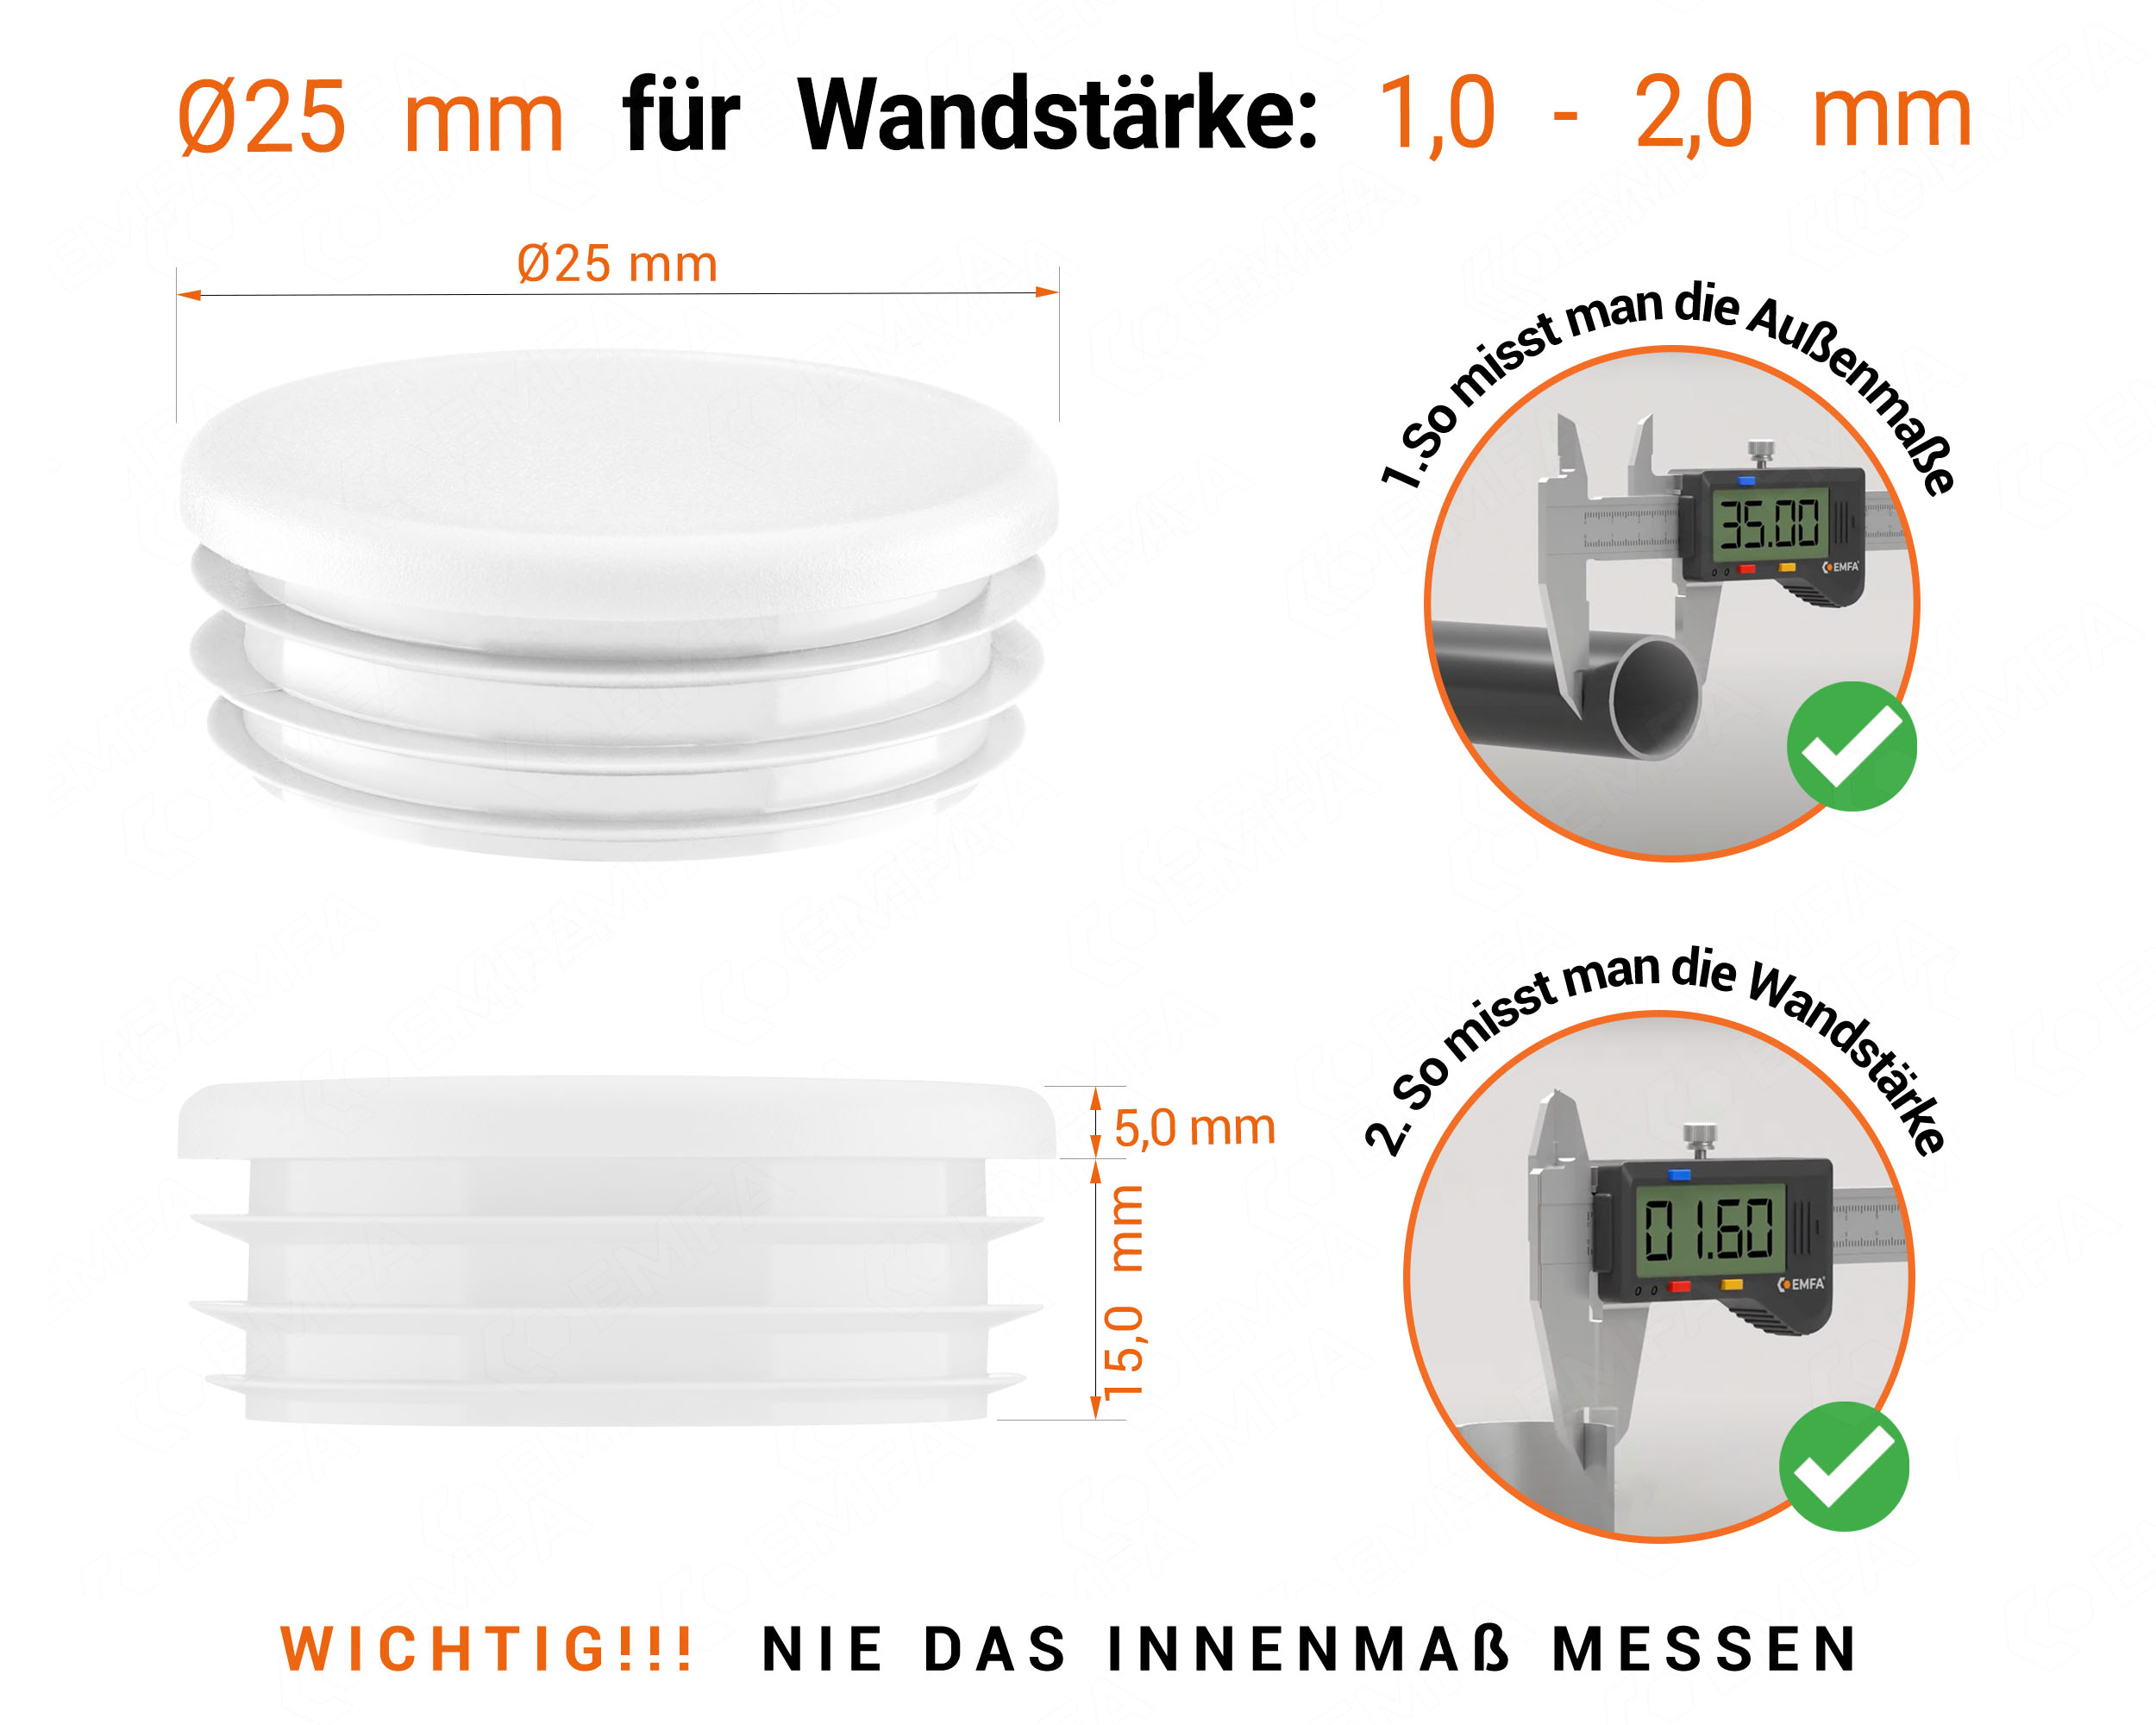 Weiße Endkappe für Rundrohre in der Größe 25 mm mit technischen Abmessungen und Anleitung für korrekte Messung